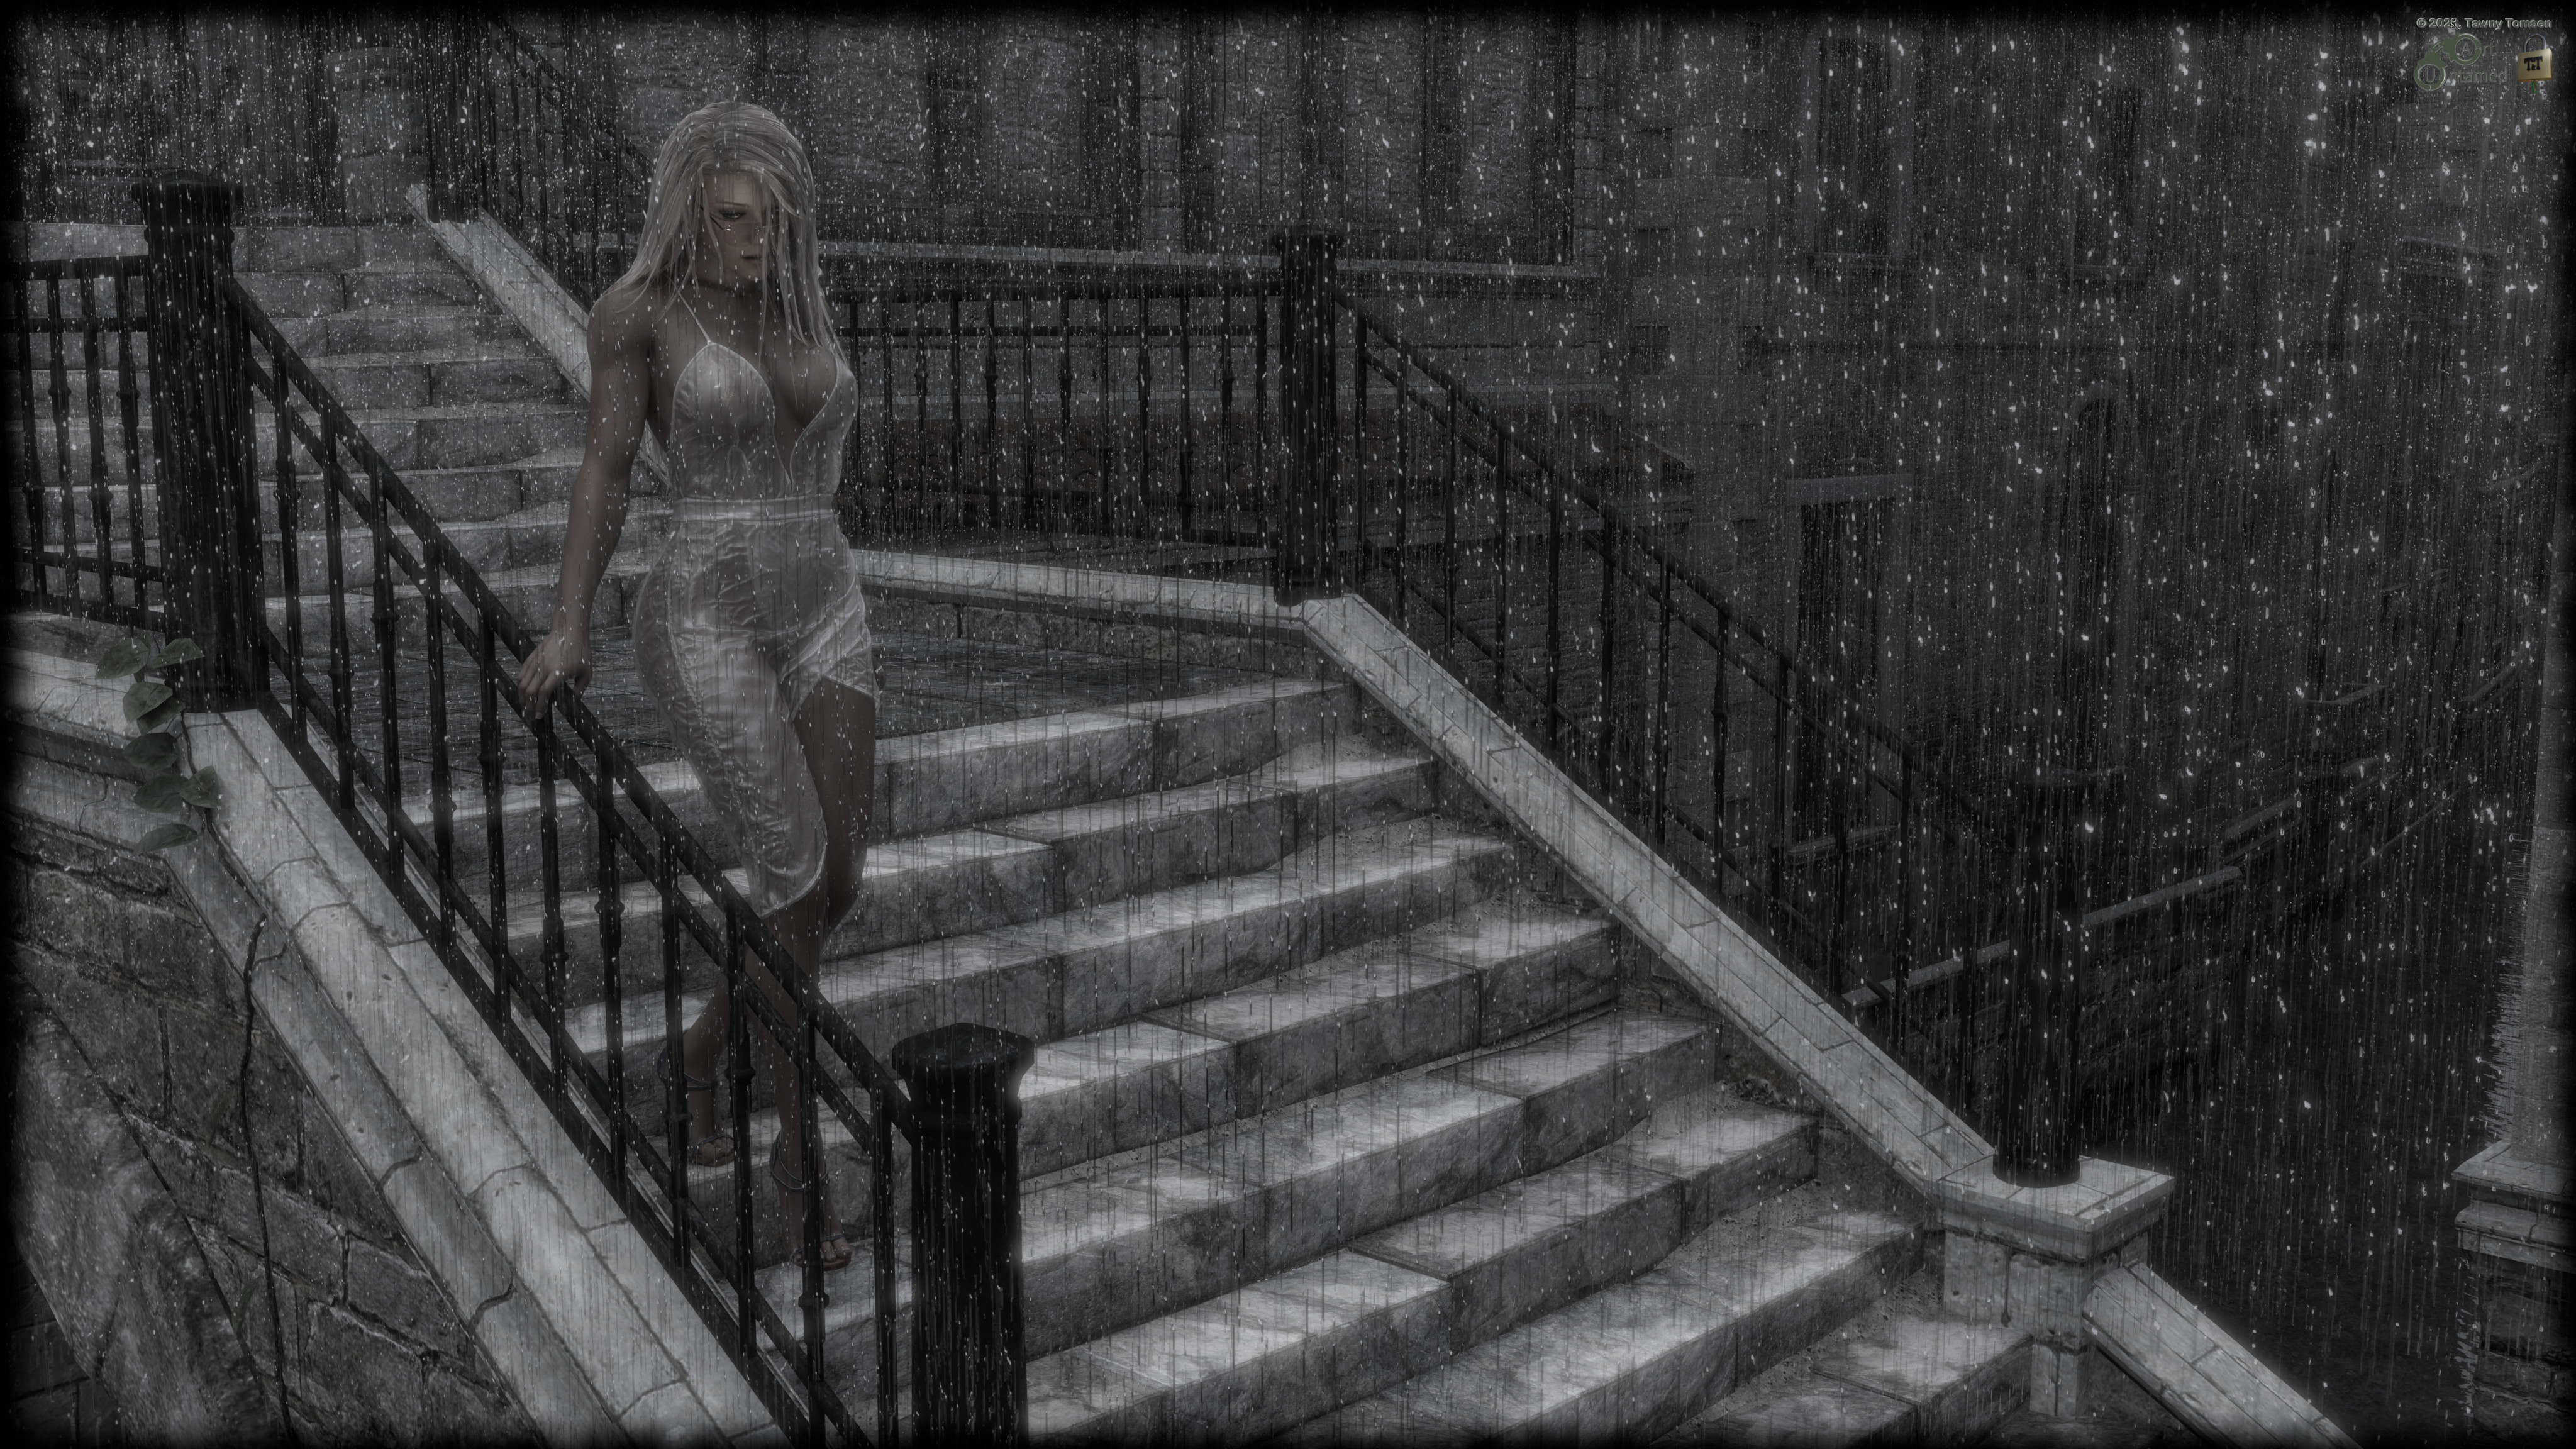 Tawny in The Rain